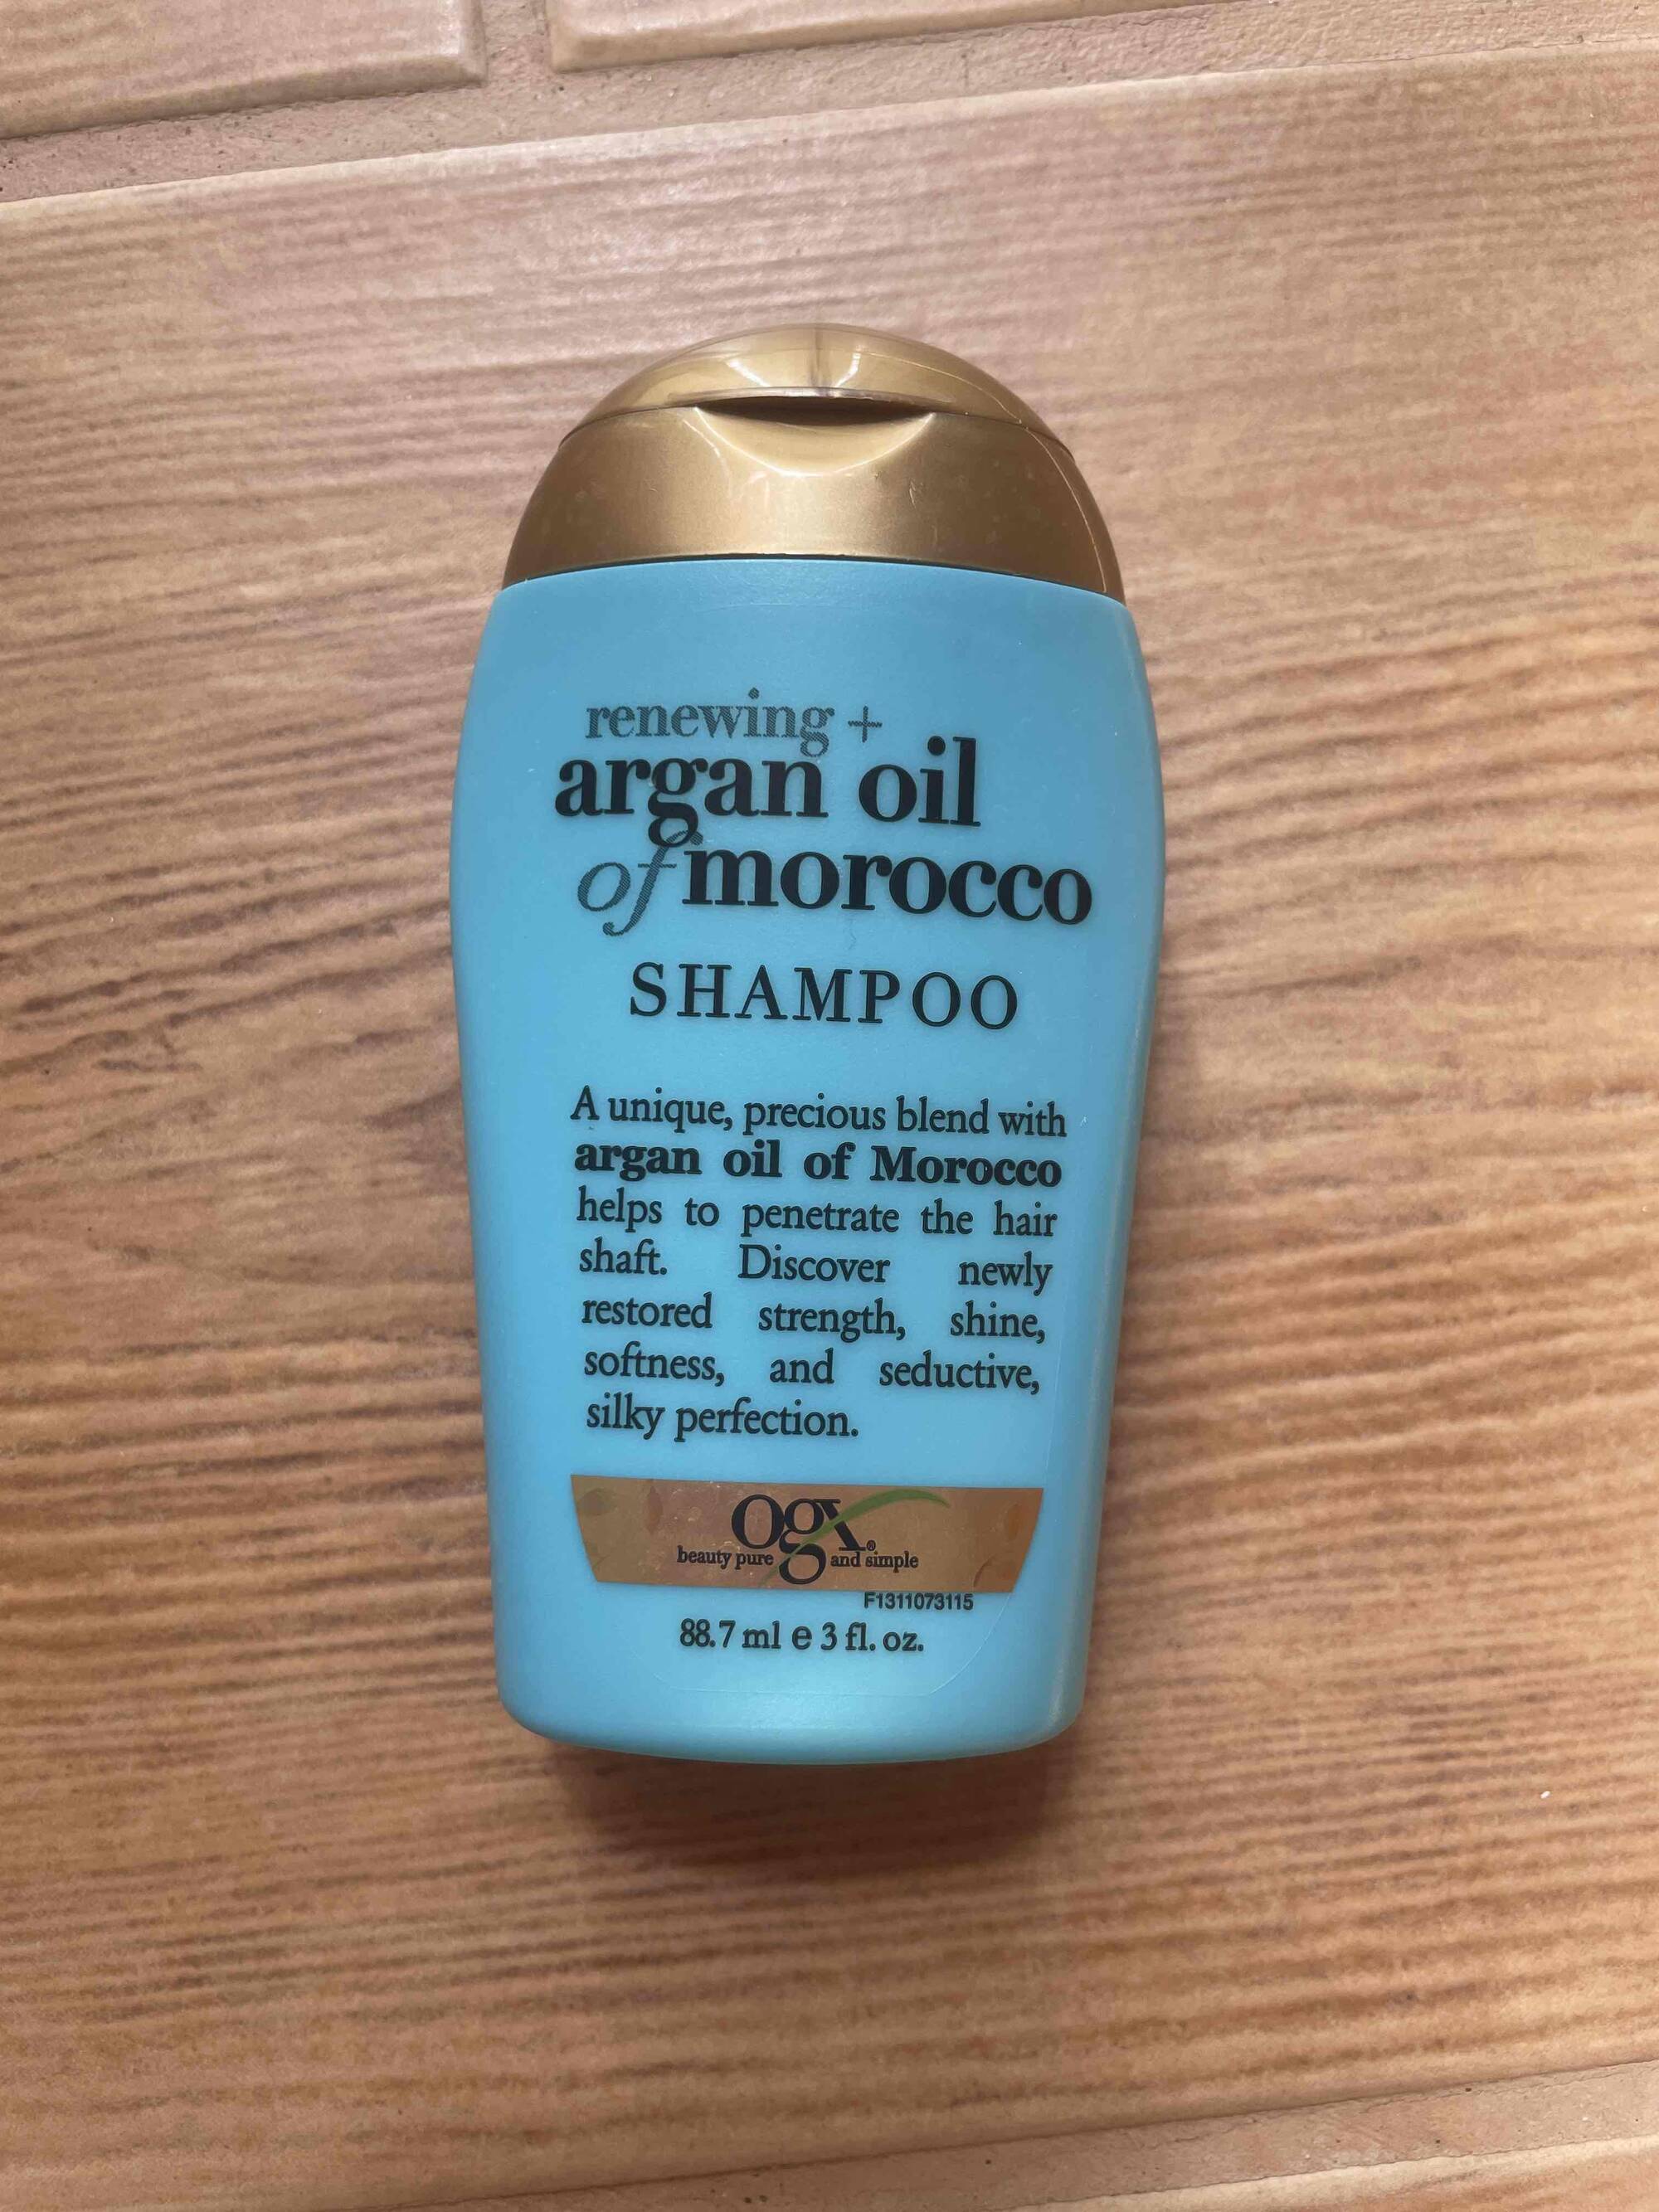 OGX - Renewing+ Argan oil of morocco - Shampoo